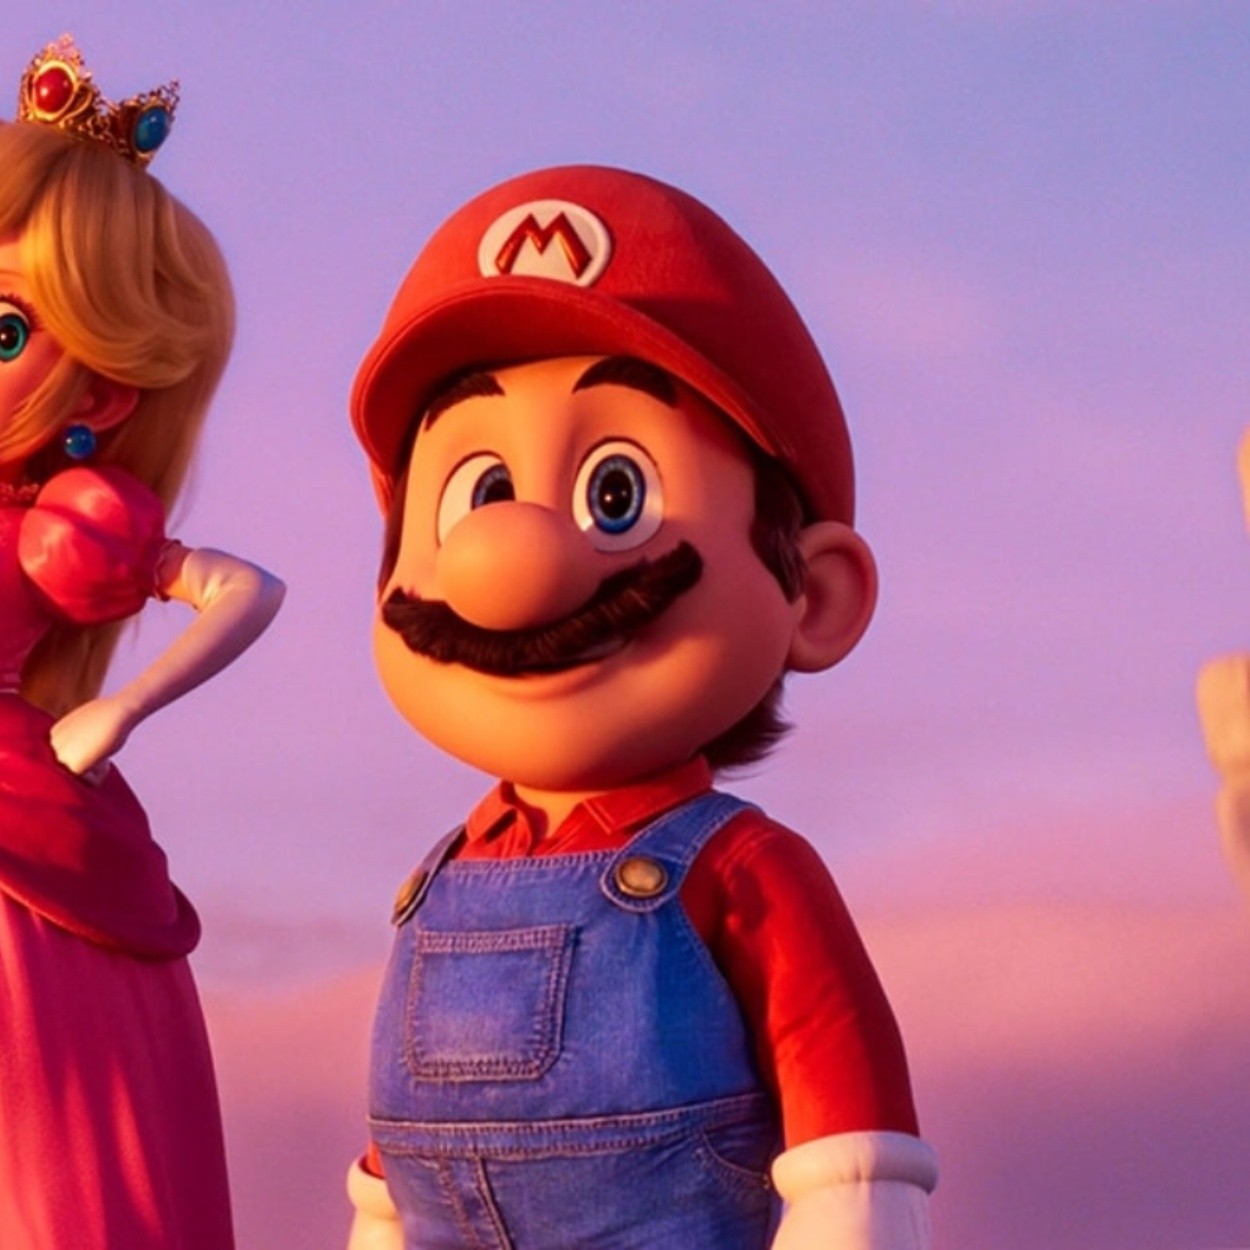 Peaches de Bowser; esto dice canción de Super Mario Bros: La Película - Fama